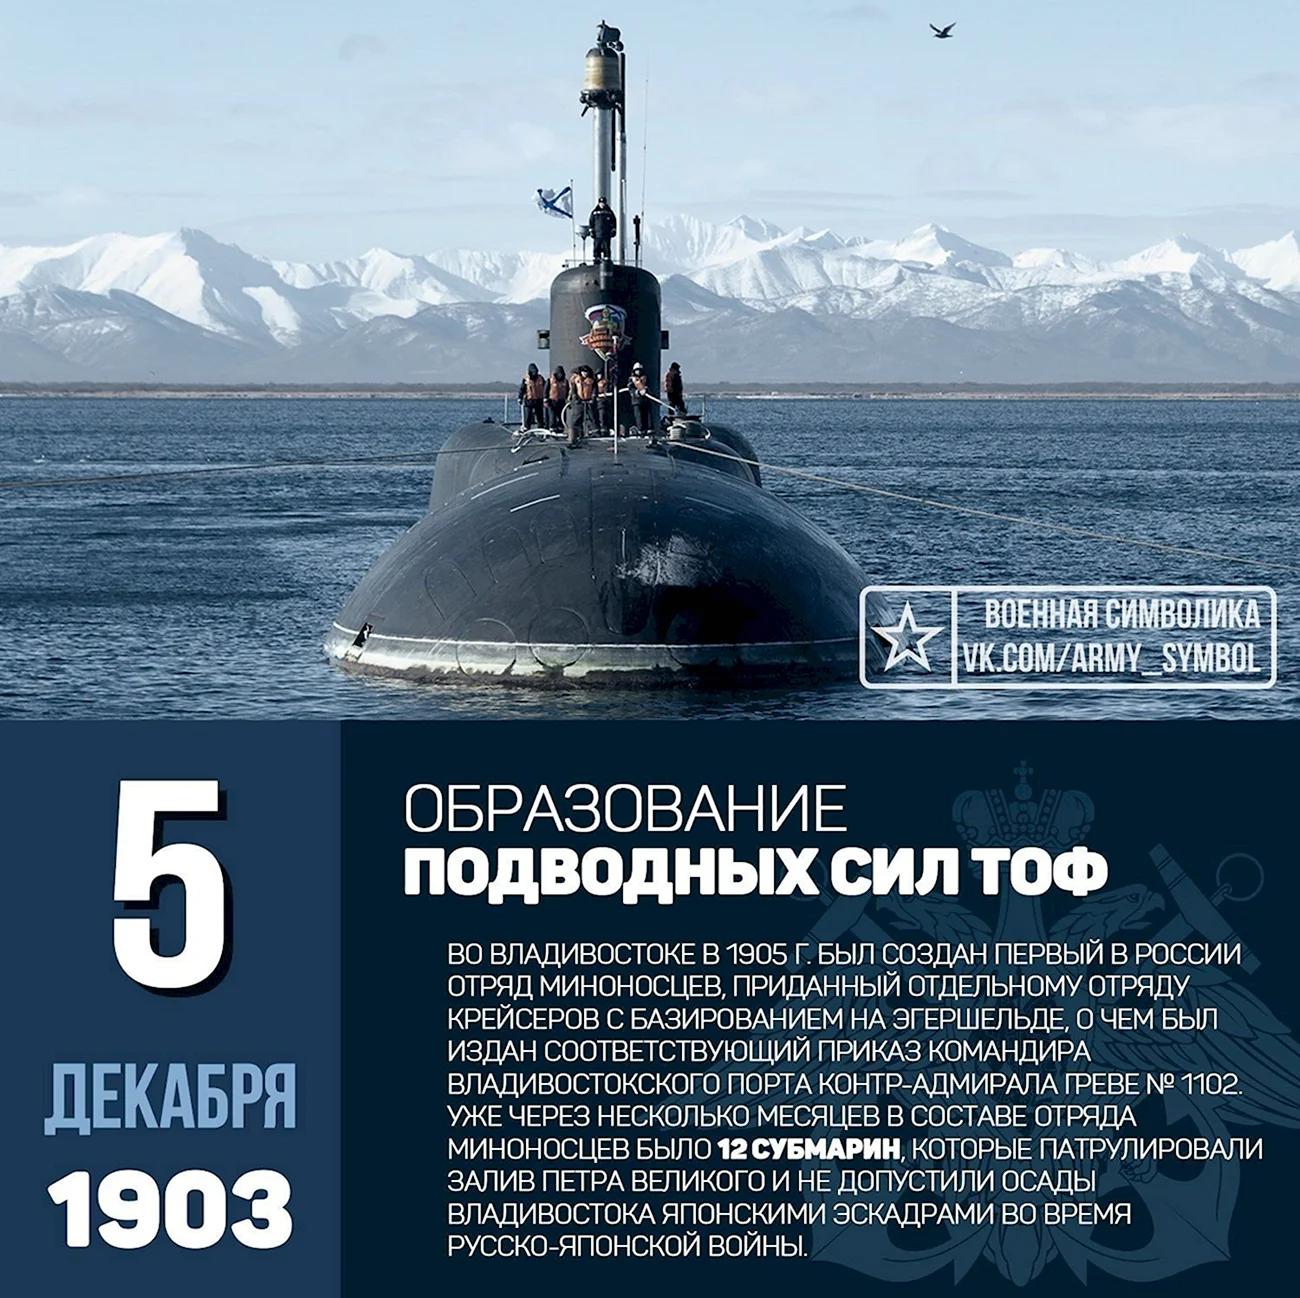 День образования подводных сил ТОФ. Поздравление